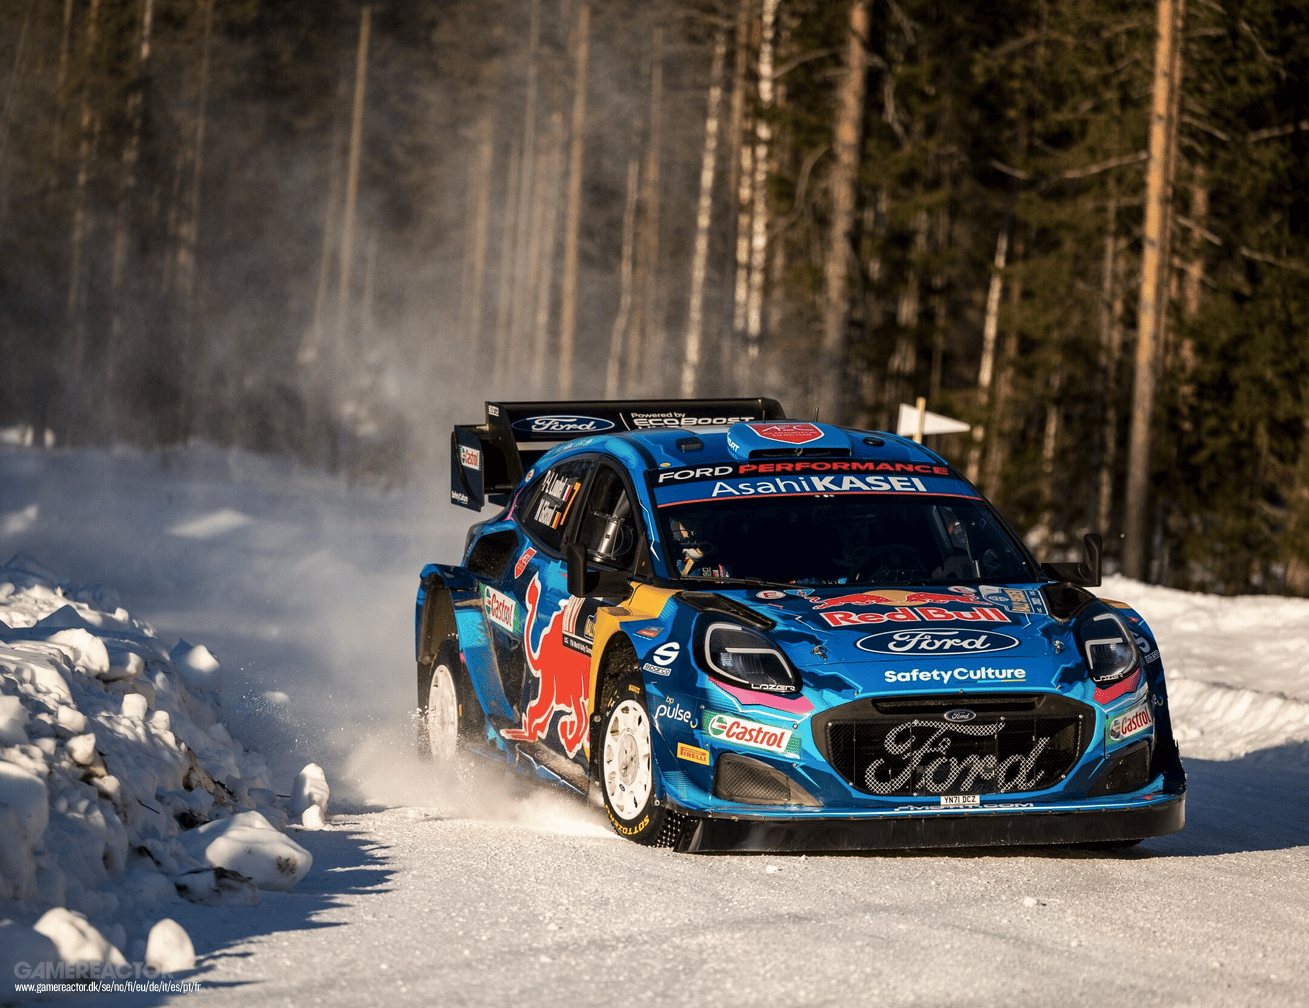 Rumeur: EA sports WRC sortira le 3 novembre